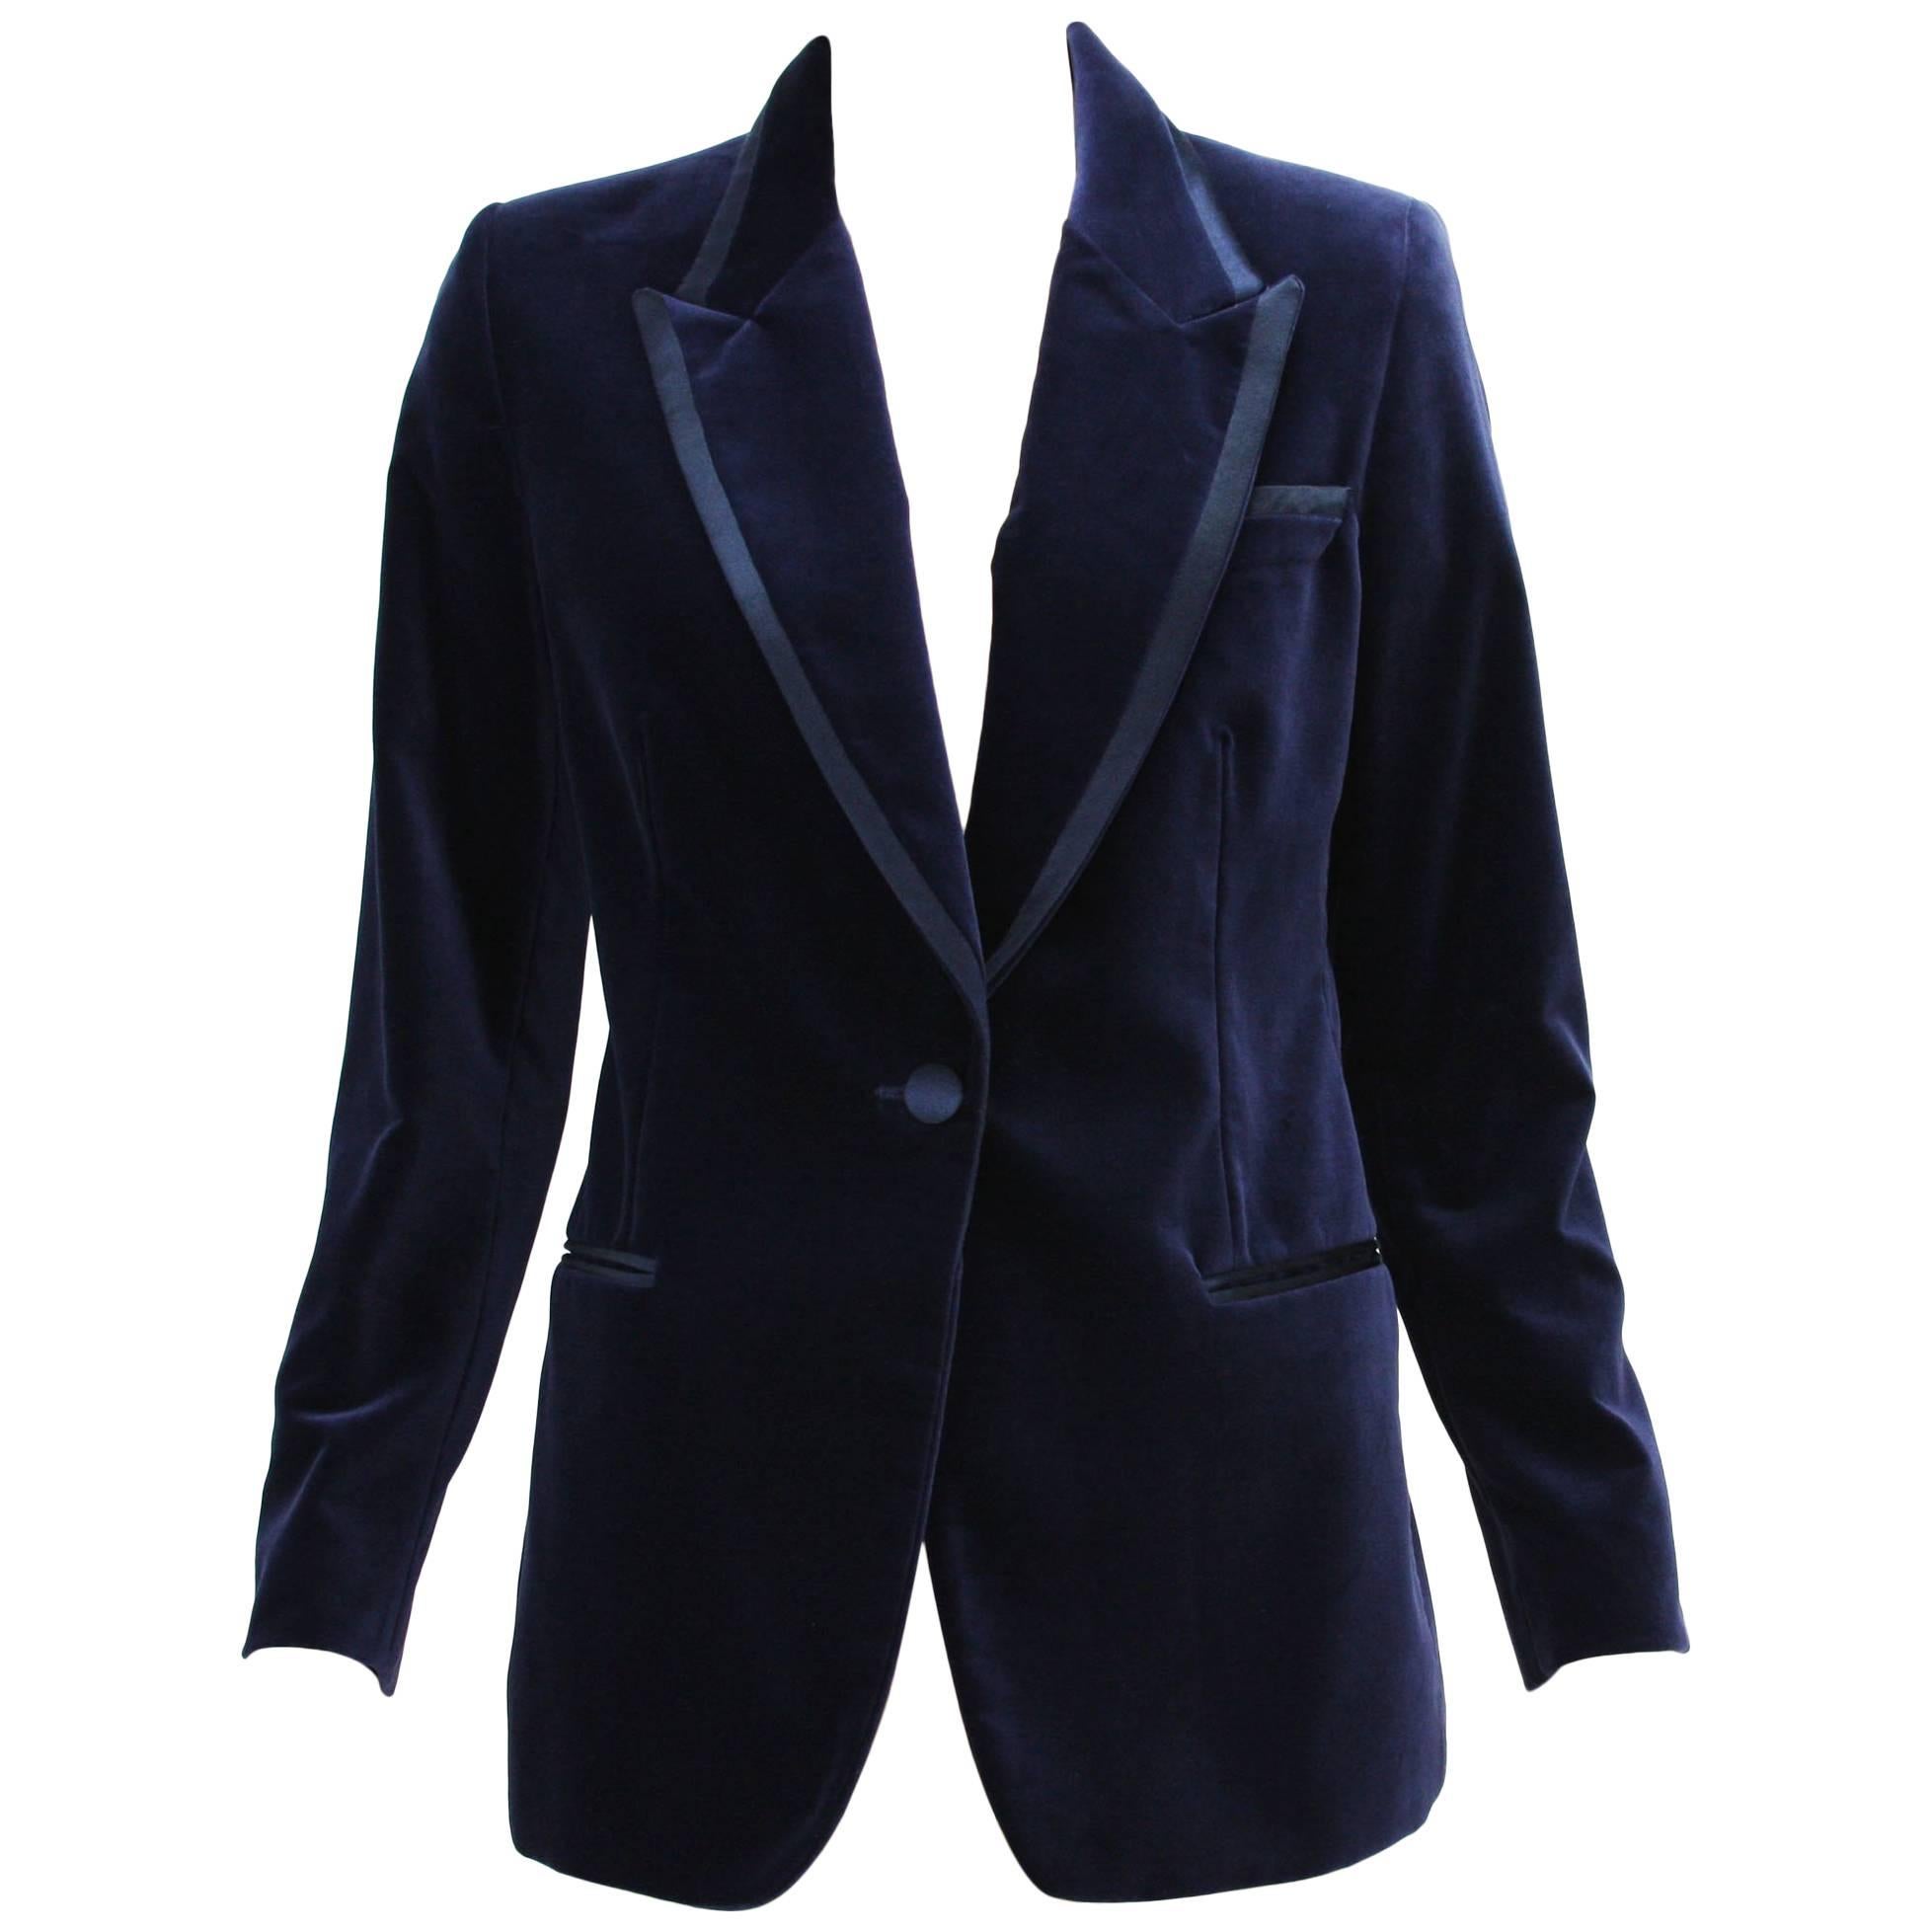 Tom Ford for Gucci 1996 Collection Dark Blue Velvet Tuxedo Jacket Blazer It. 42